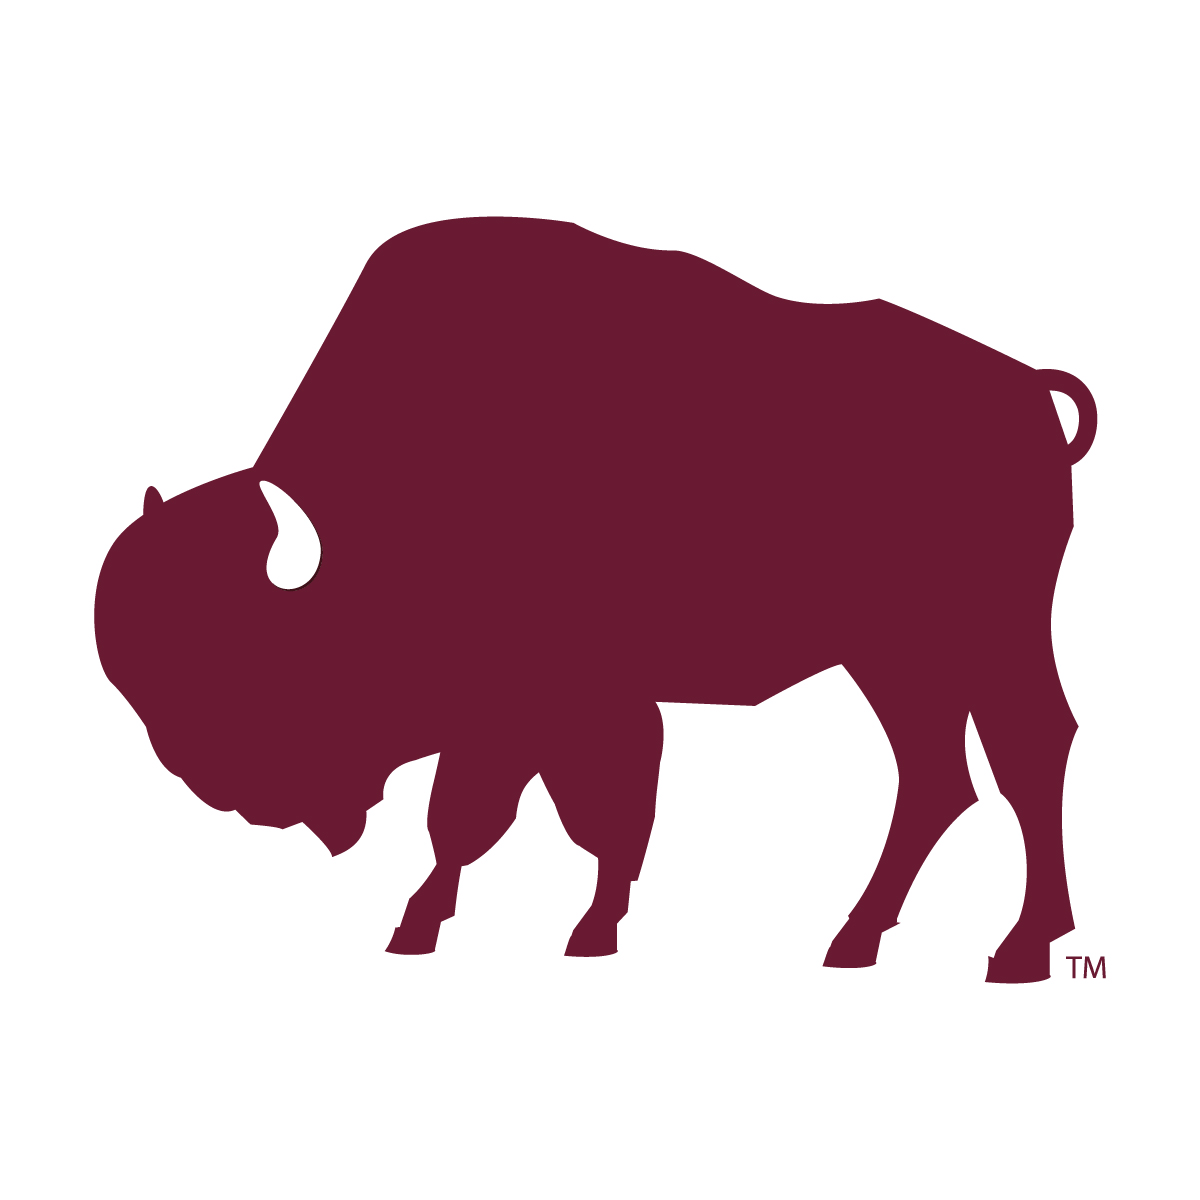 West Texas A&M Buffaloes